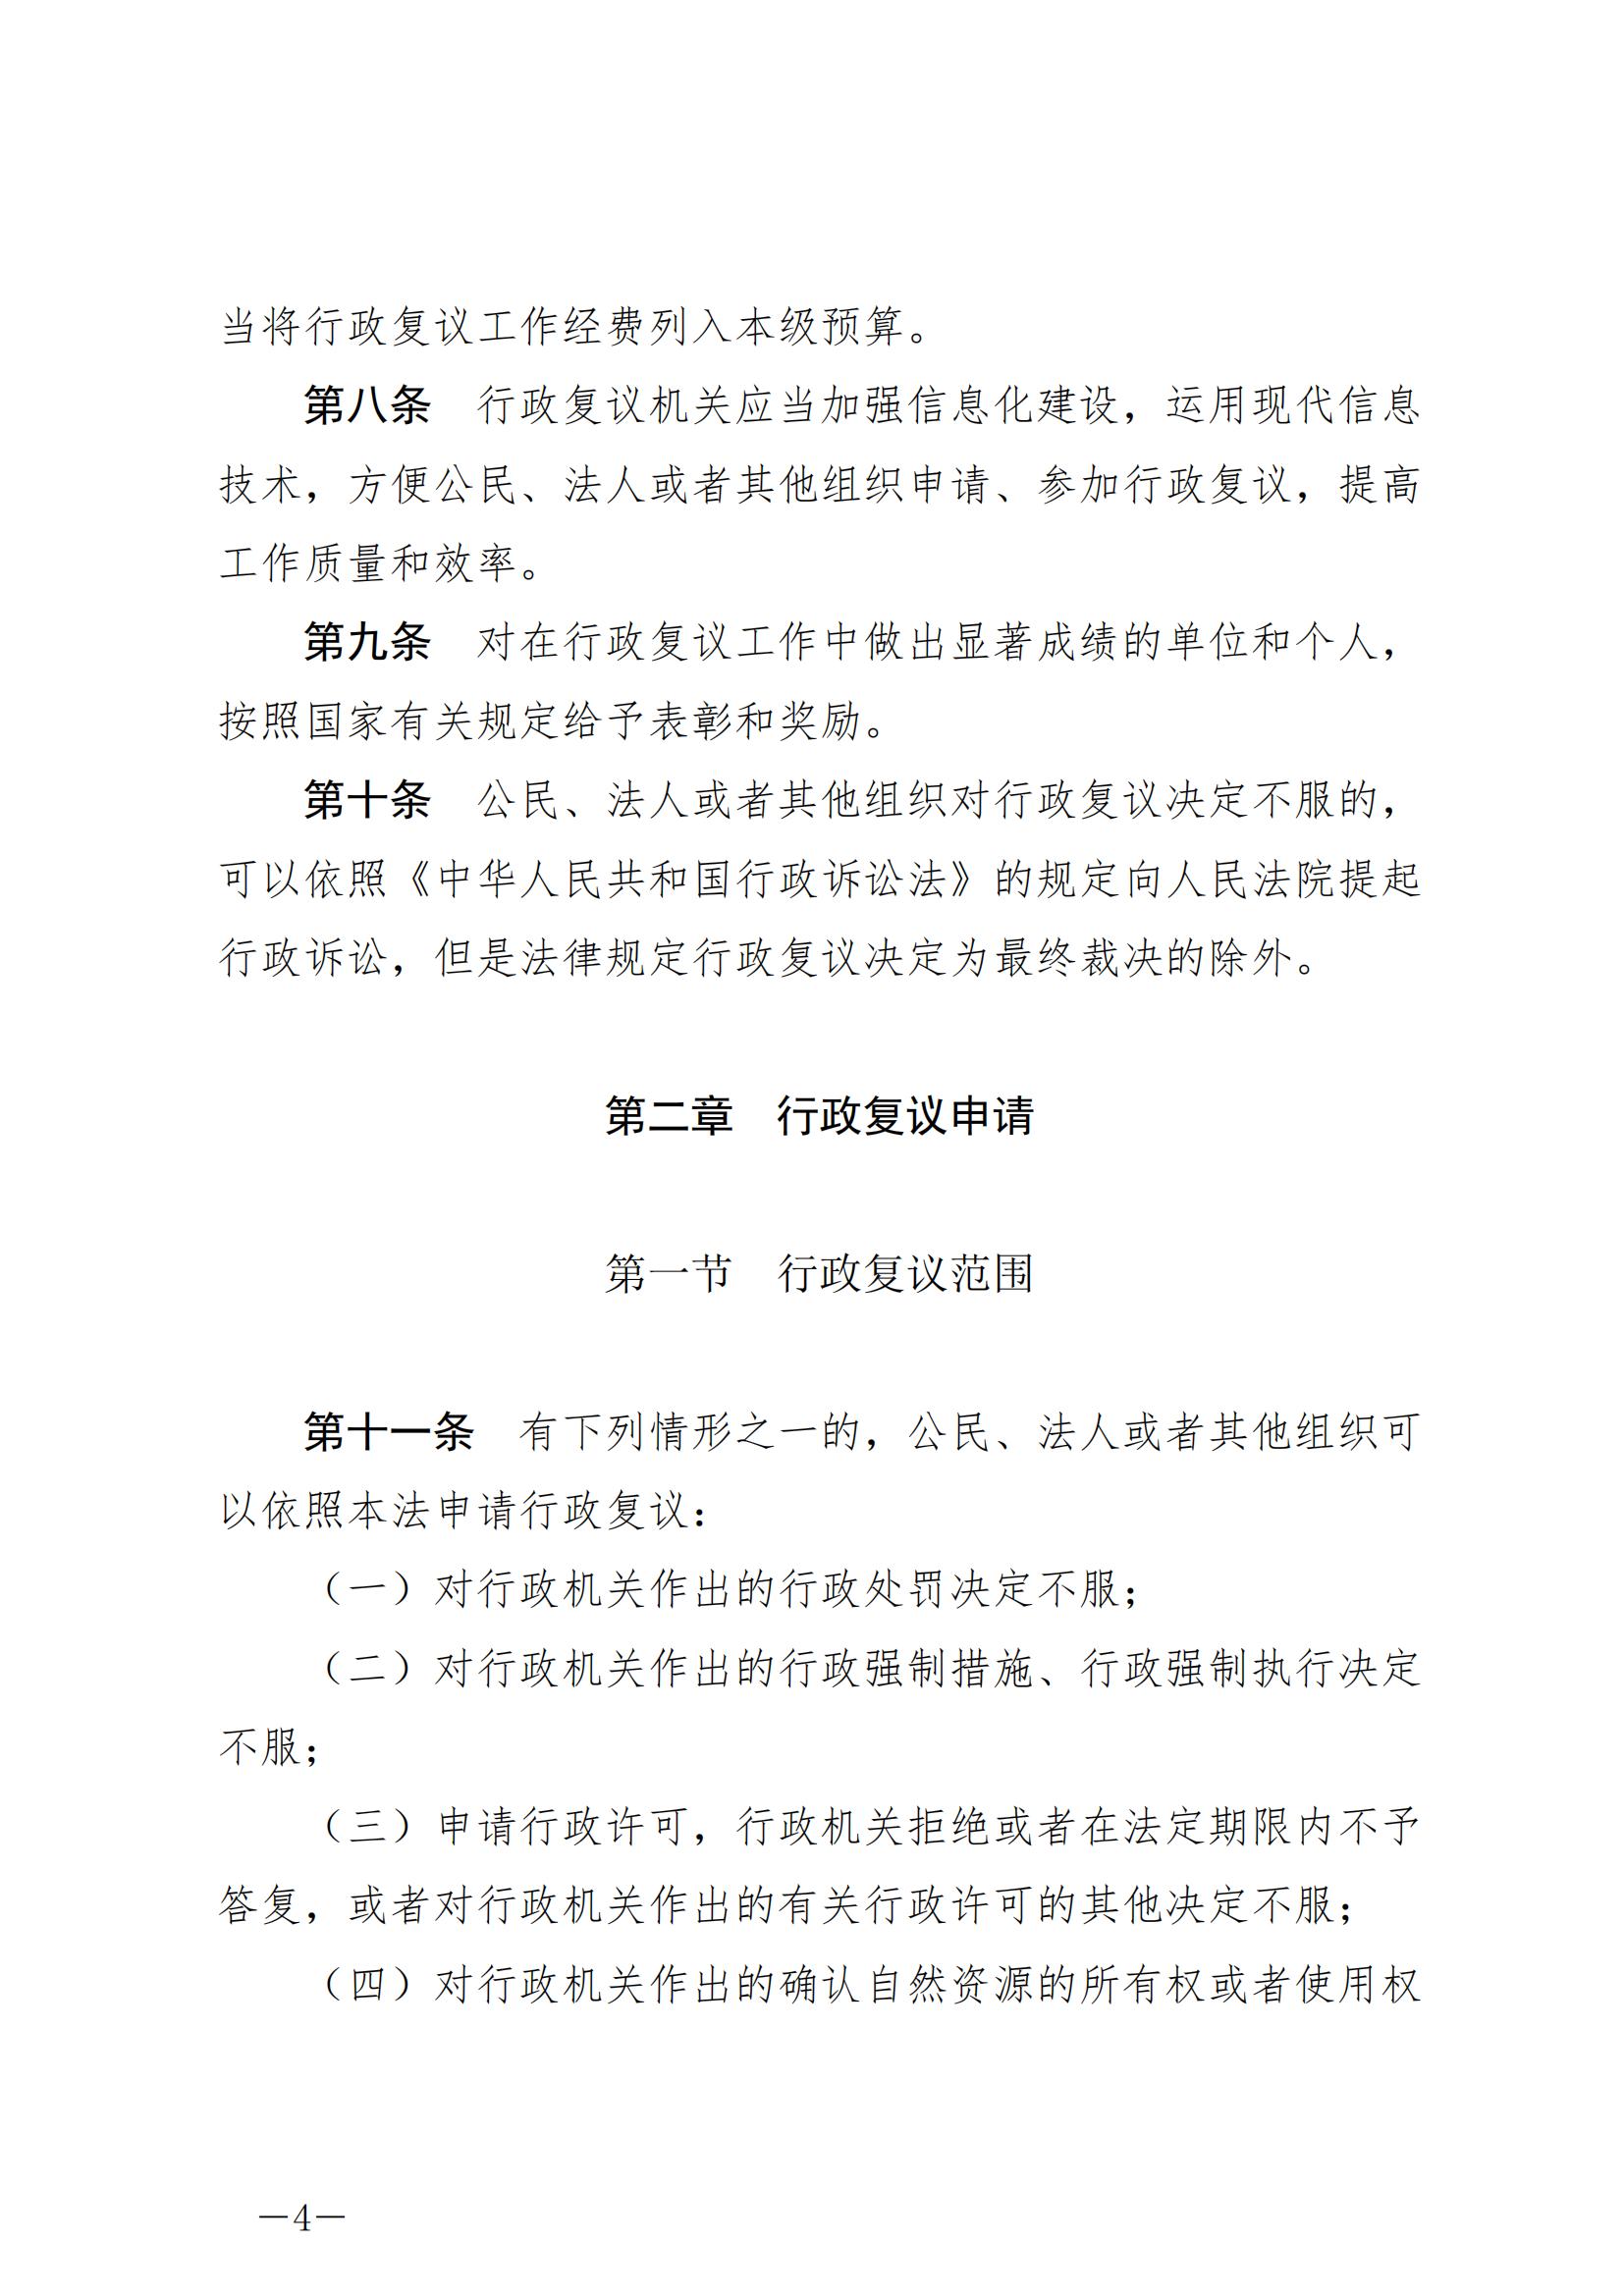 《中华人民共和国行政复议法》_20231204154310_03.jpg